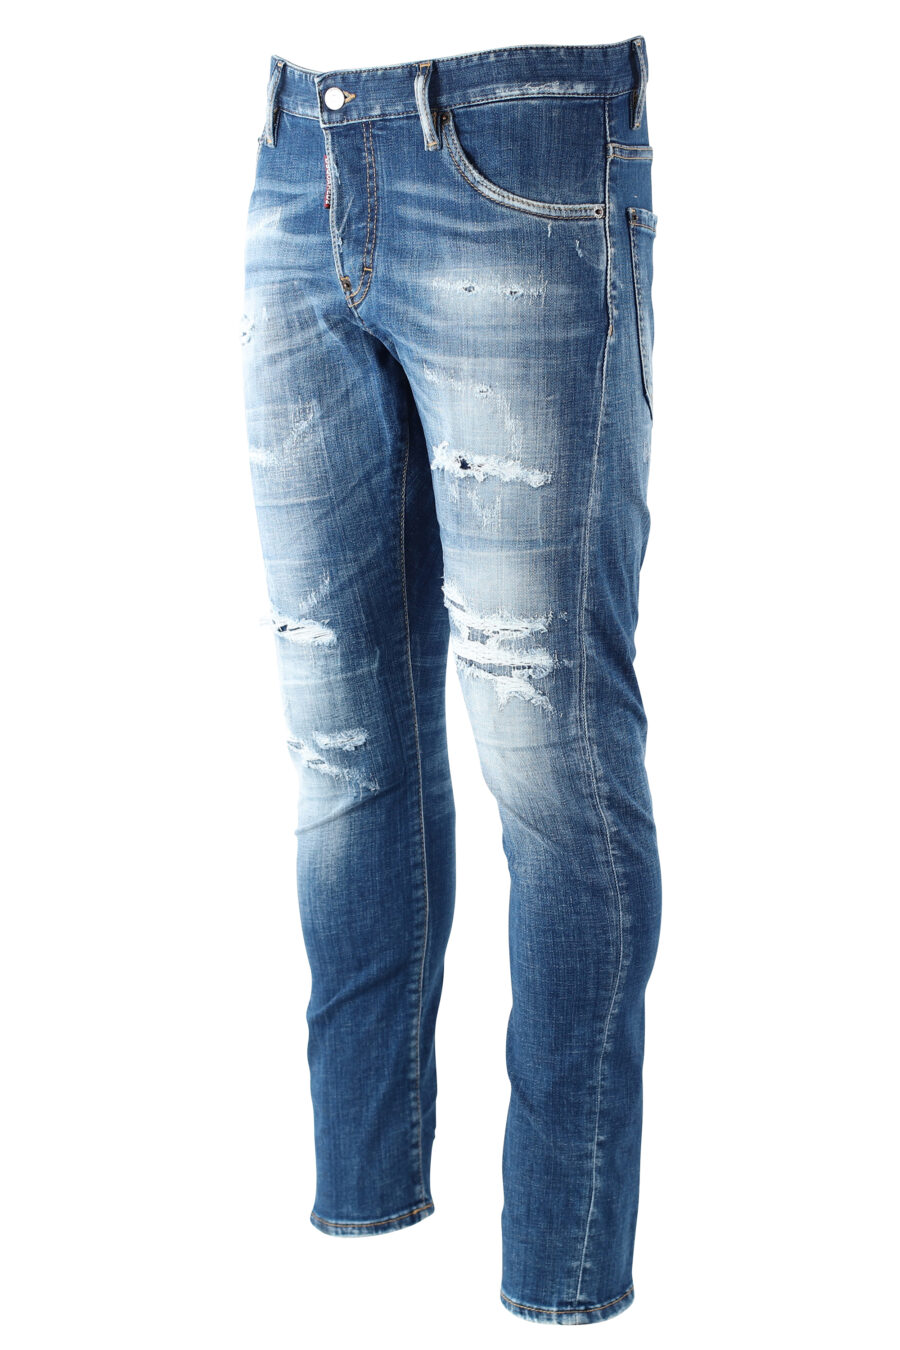 Sexy Twist Denim Jeans "sexy twiste jean" blau mit Rissen getragen - IMG 9694